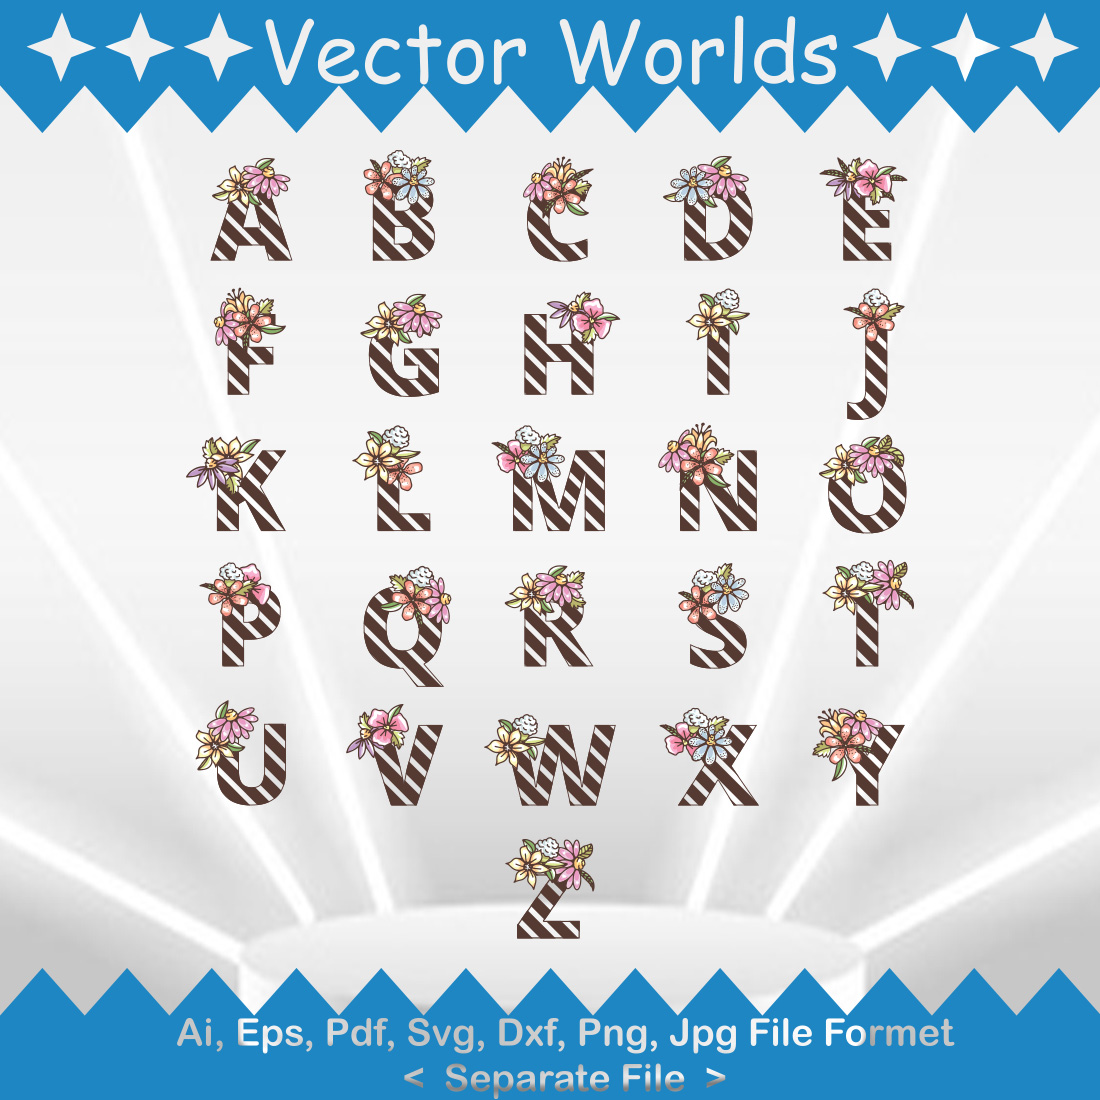 Floral Alphabet SVG Vector Design cover image.